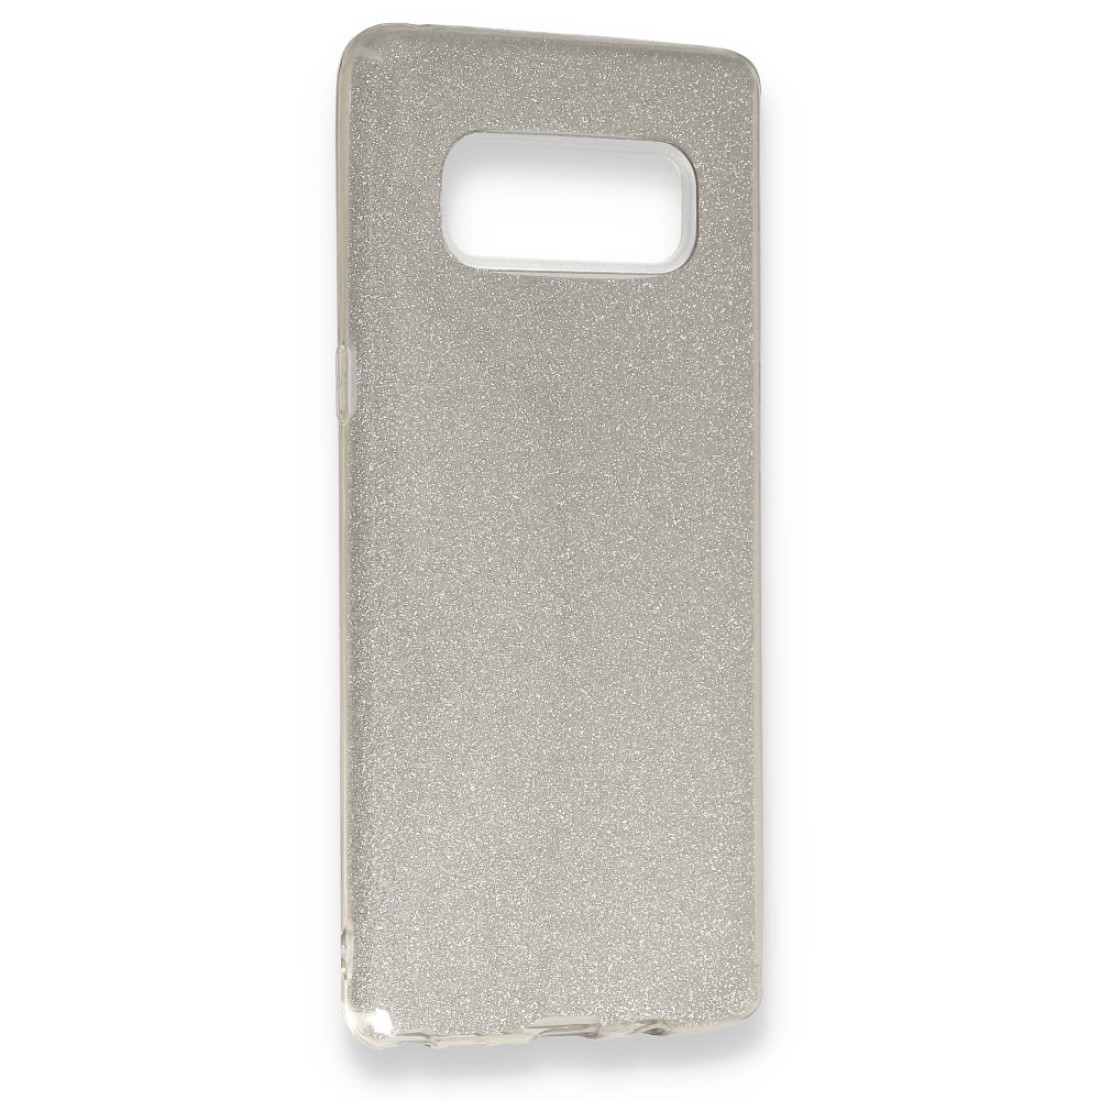 Samsung Galaxy Note 8 Kılıf Simli Katmanlı Silikon - Gümüş